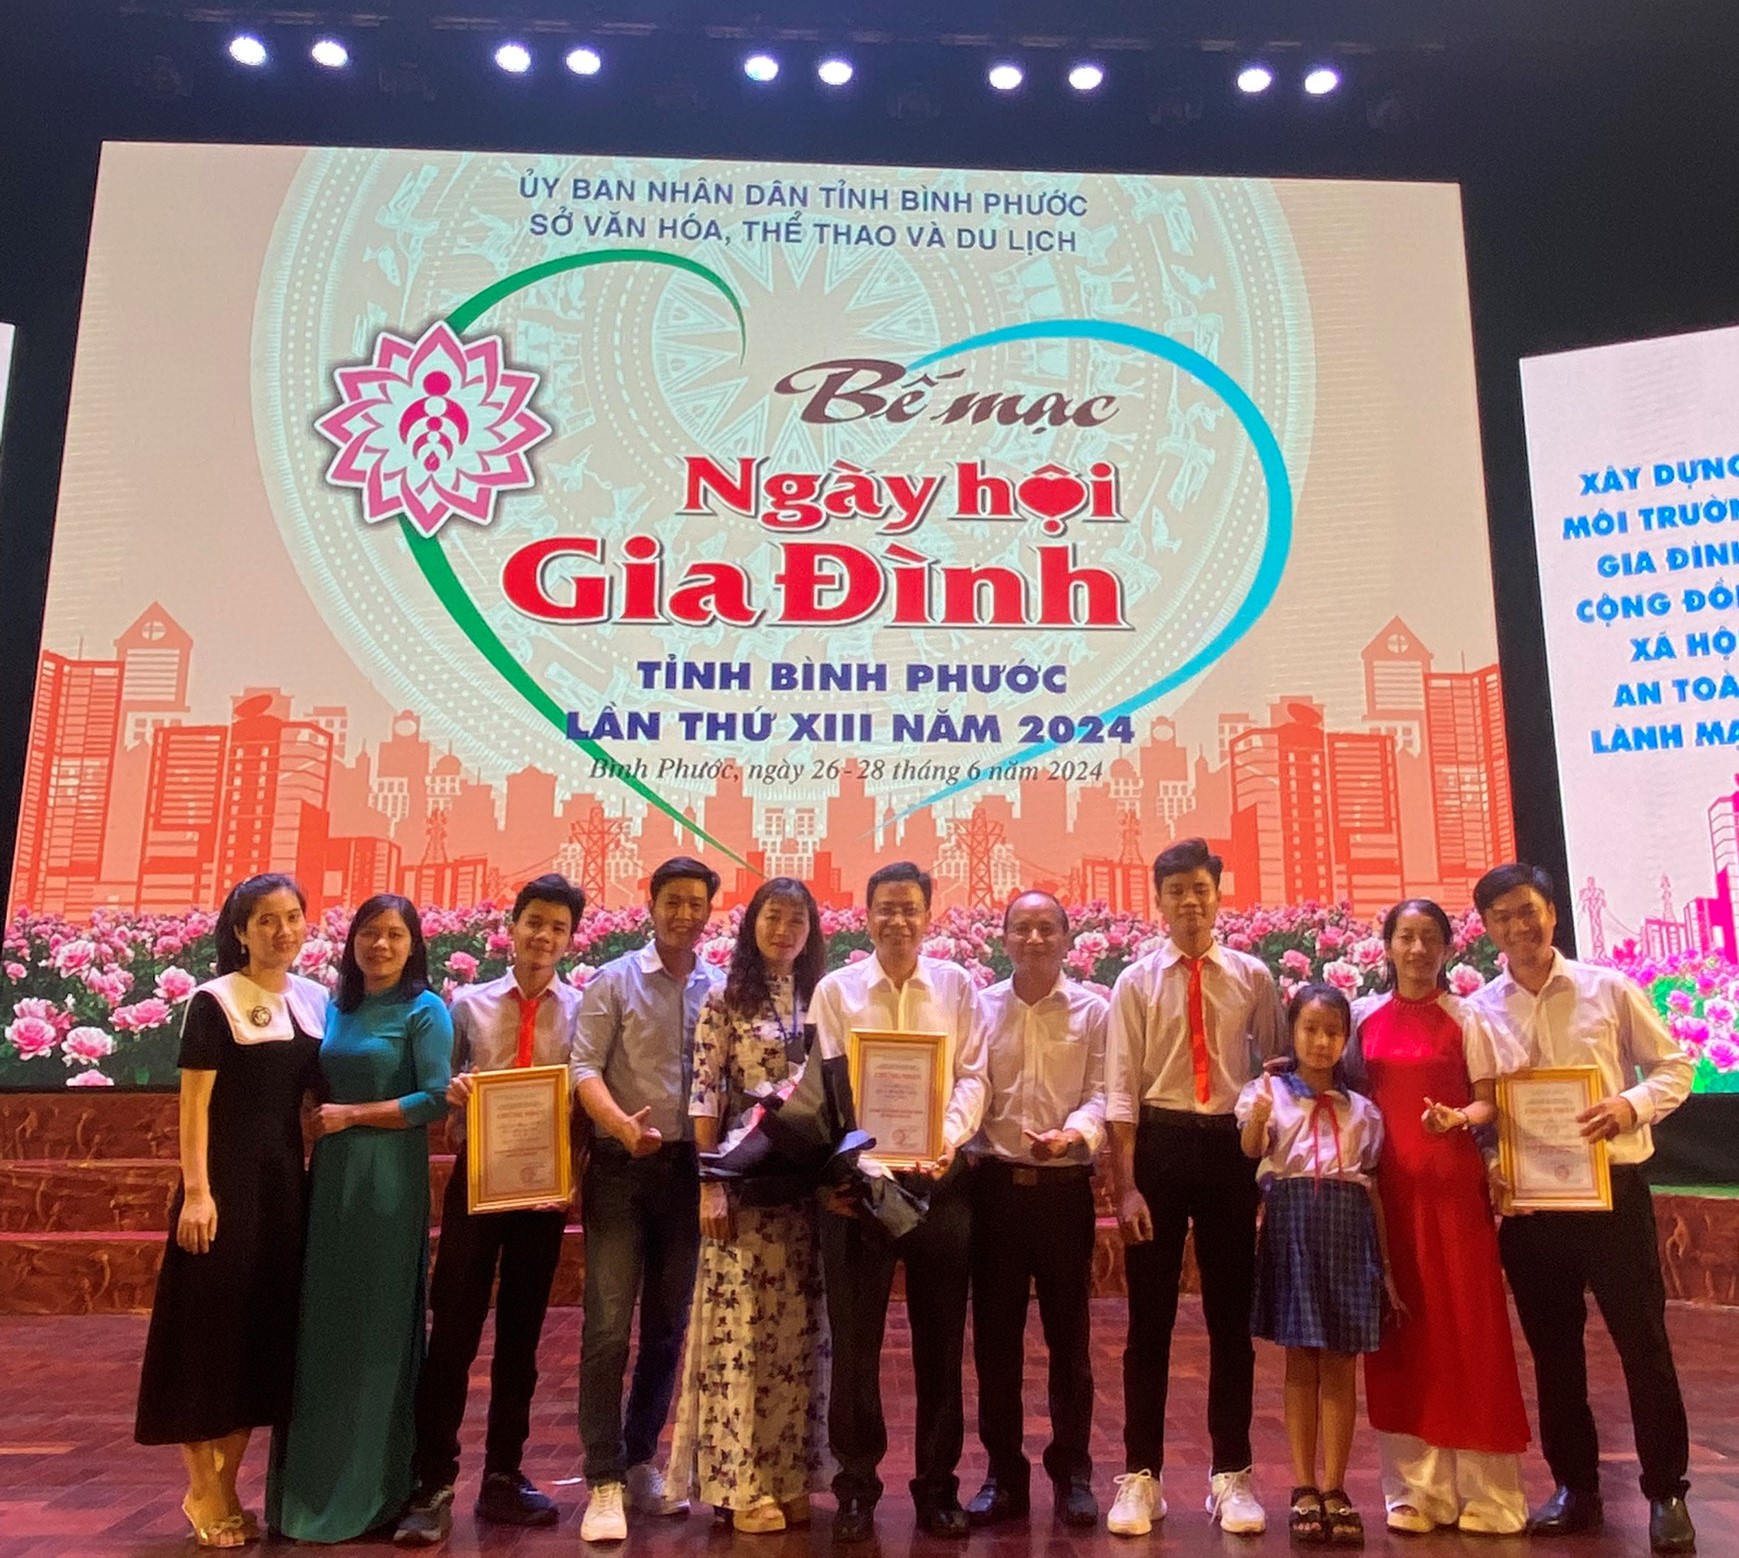 Huyện Hớn Quản đạt giải nhất toàn đoàn tại Ngày hội gia đình Việt Nam tỉnh Bình Phước lần thứ XIII, năm 2024.